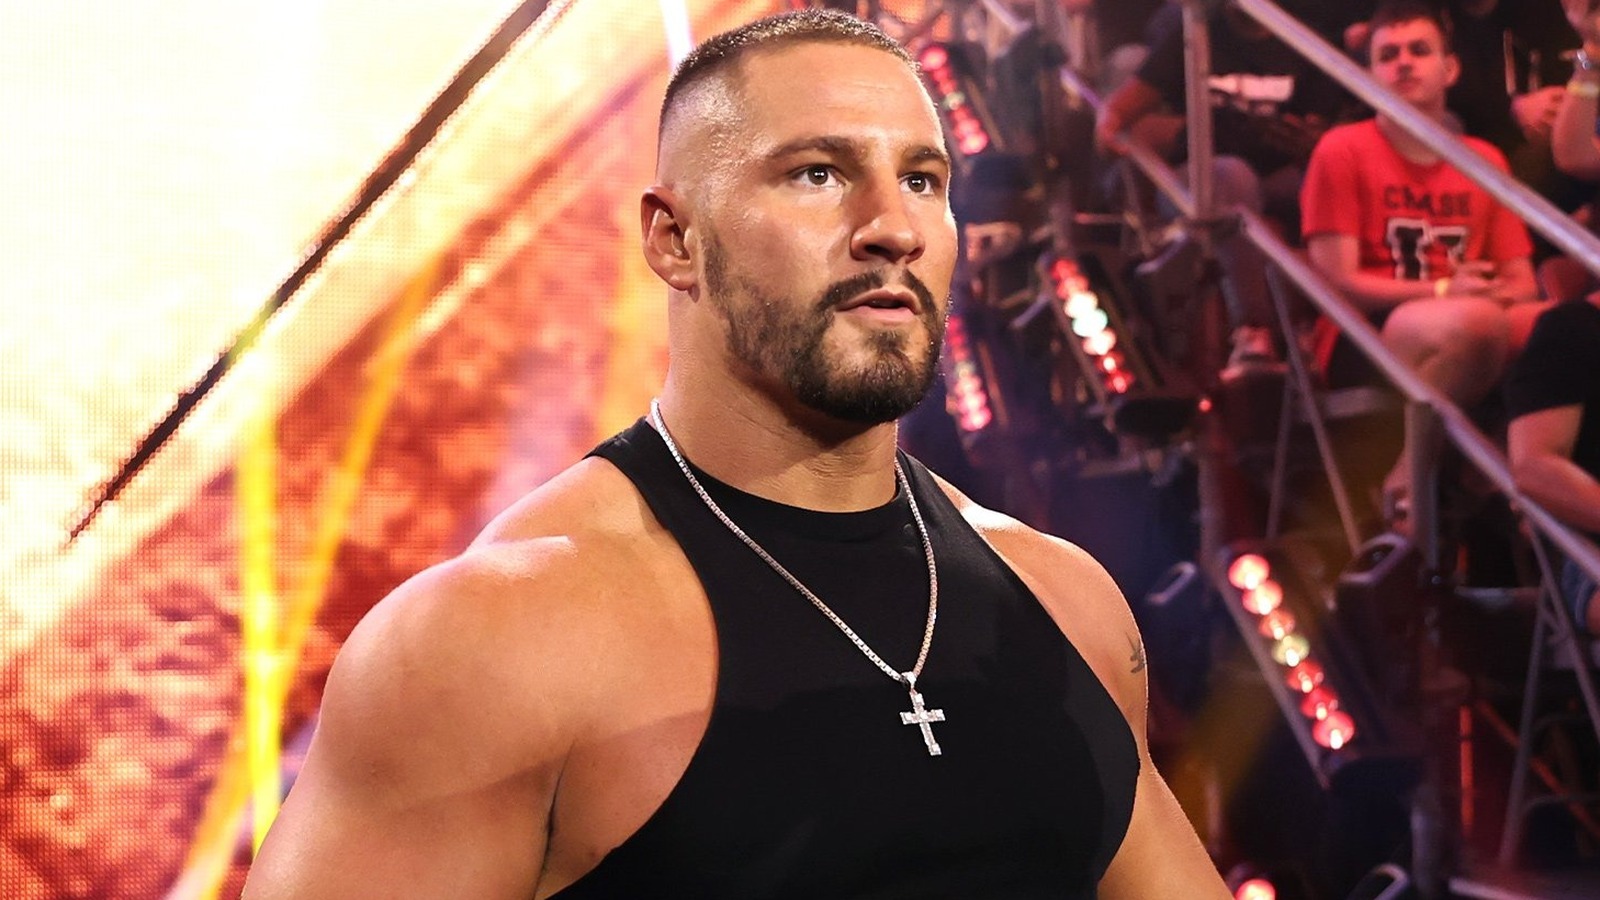 Dijak de la WWE trolls a su compañero estrella de NXT, Bron Breakker, con una rima